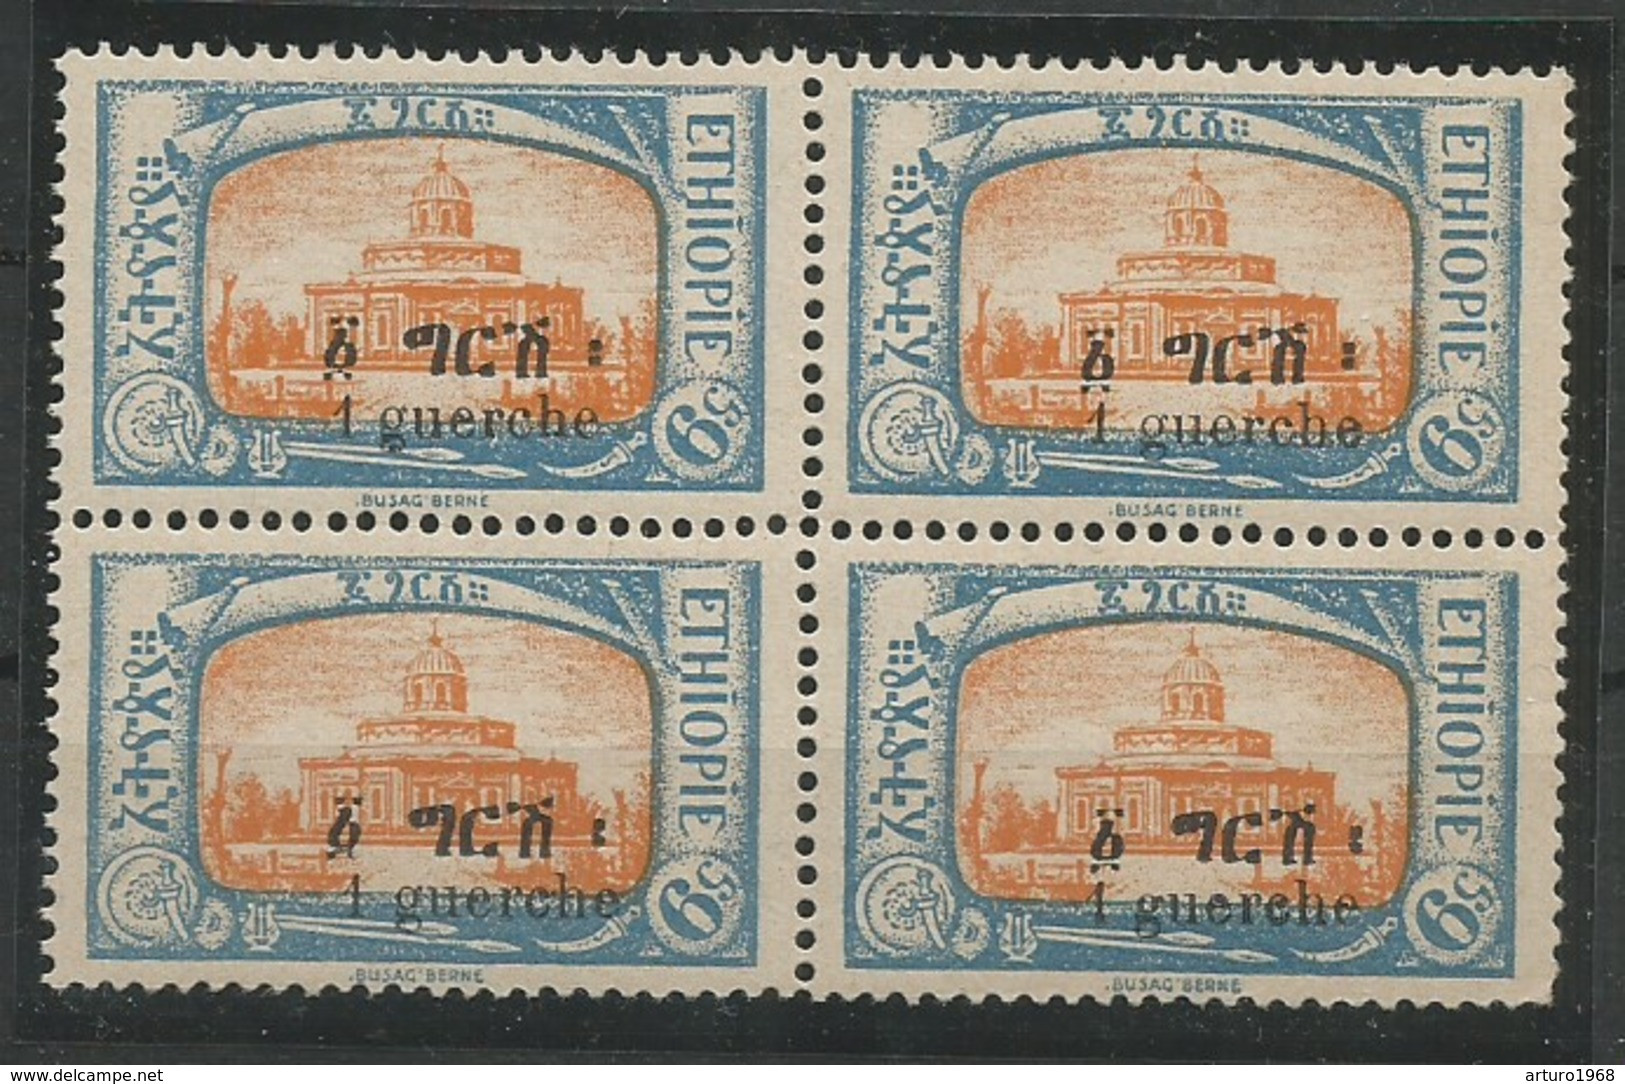 Ethiopia Ethiopie Äthiopien Mi.93 In Block Of 4 MNH / ** 1927 Guerche = 15 Mm, Genuine! - Ethiopie